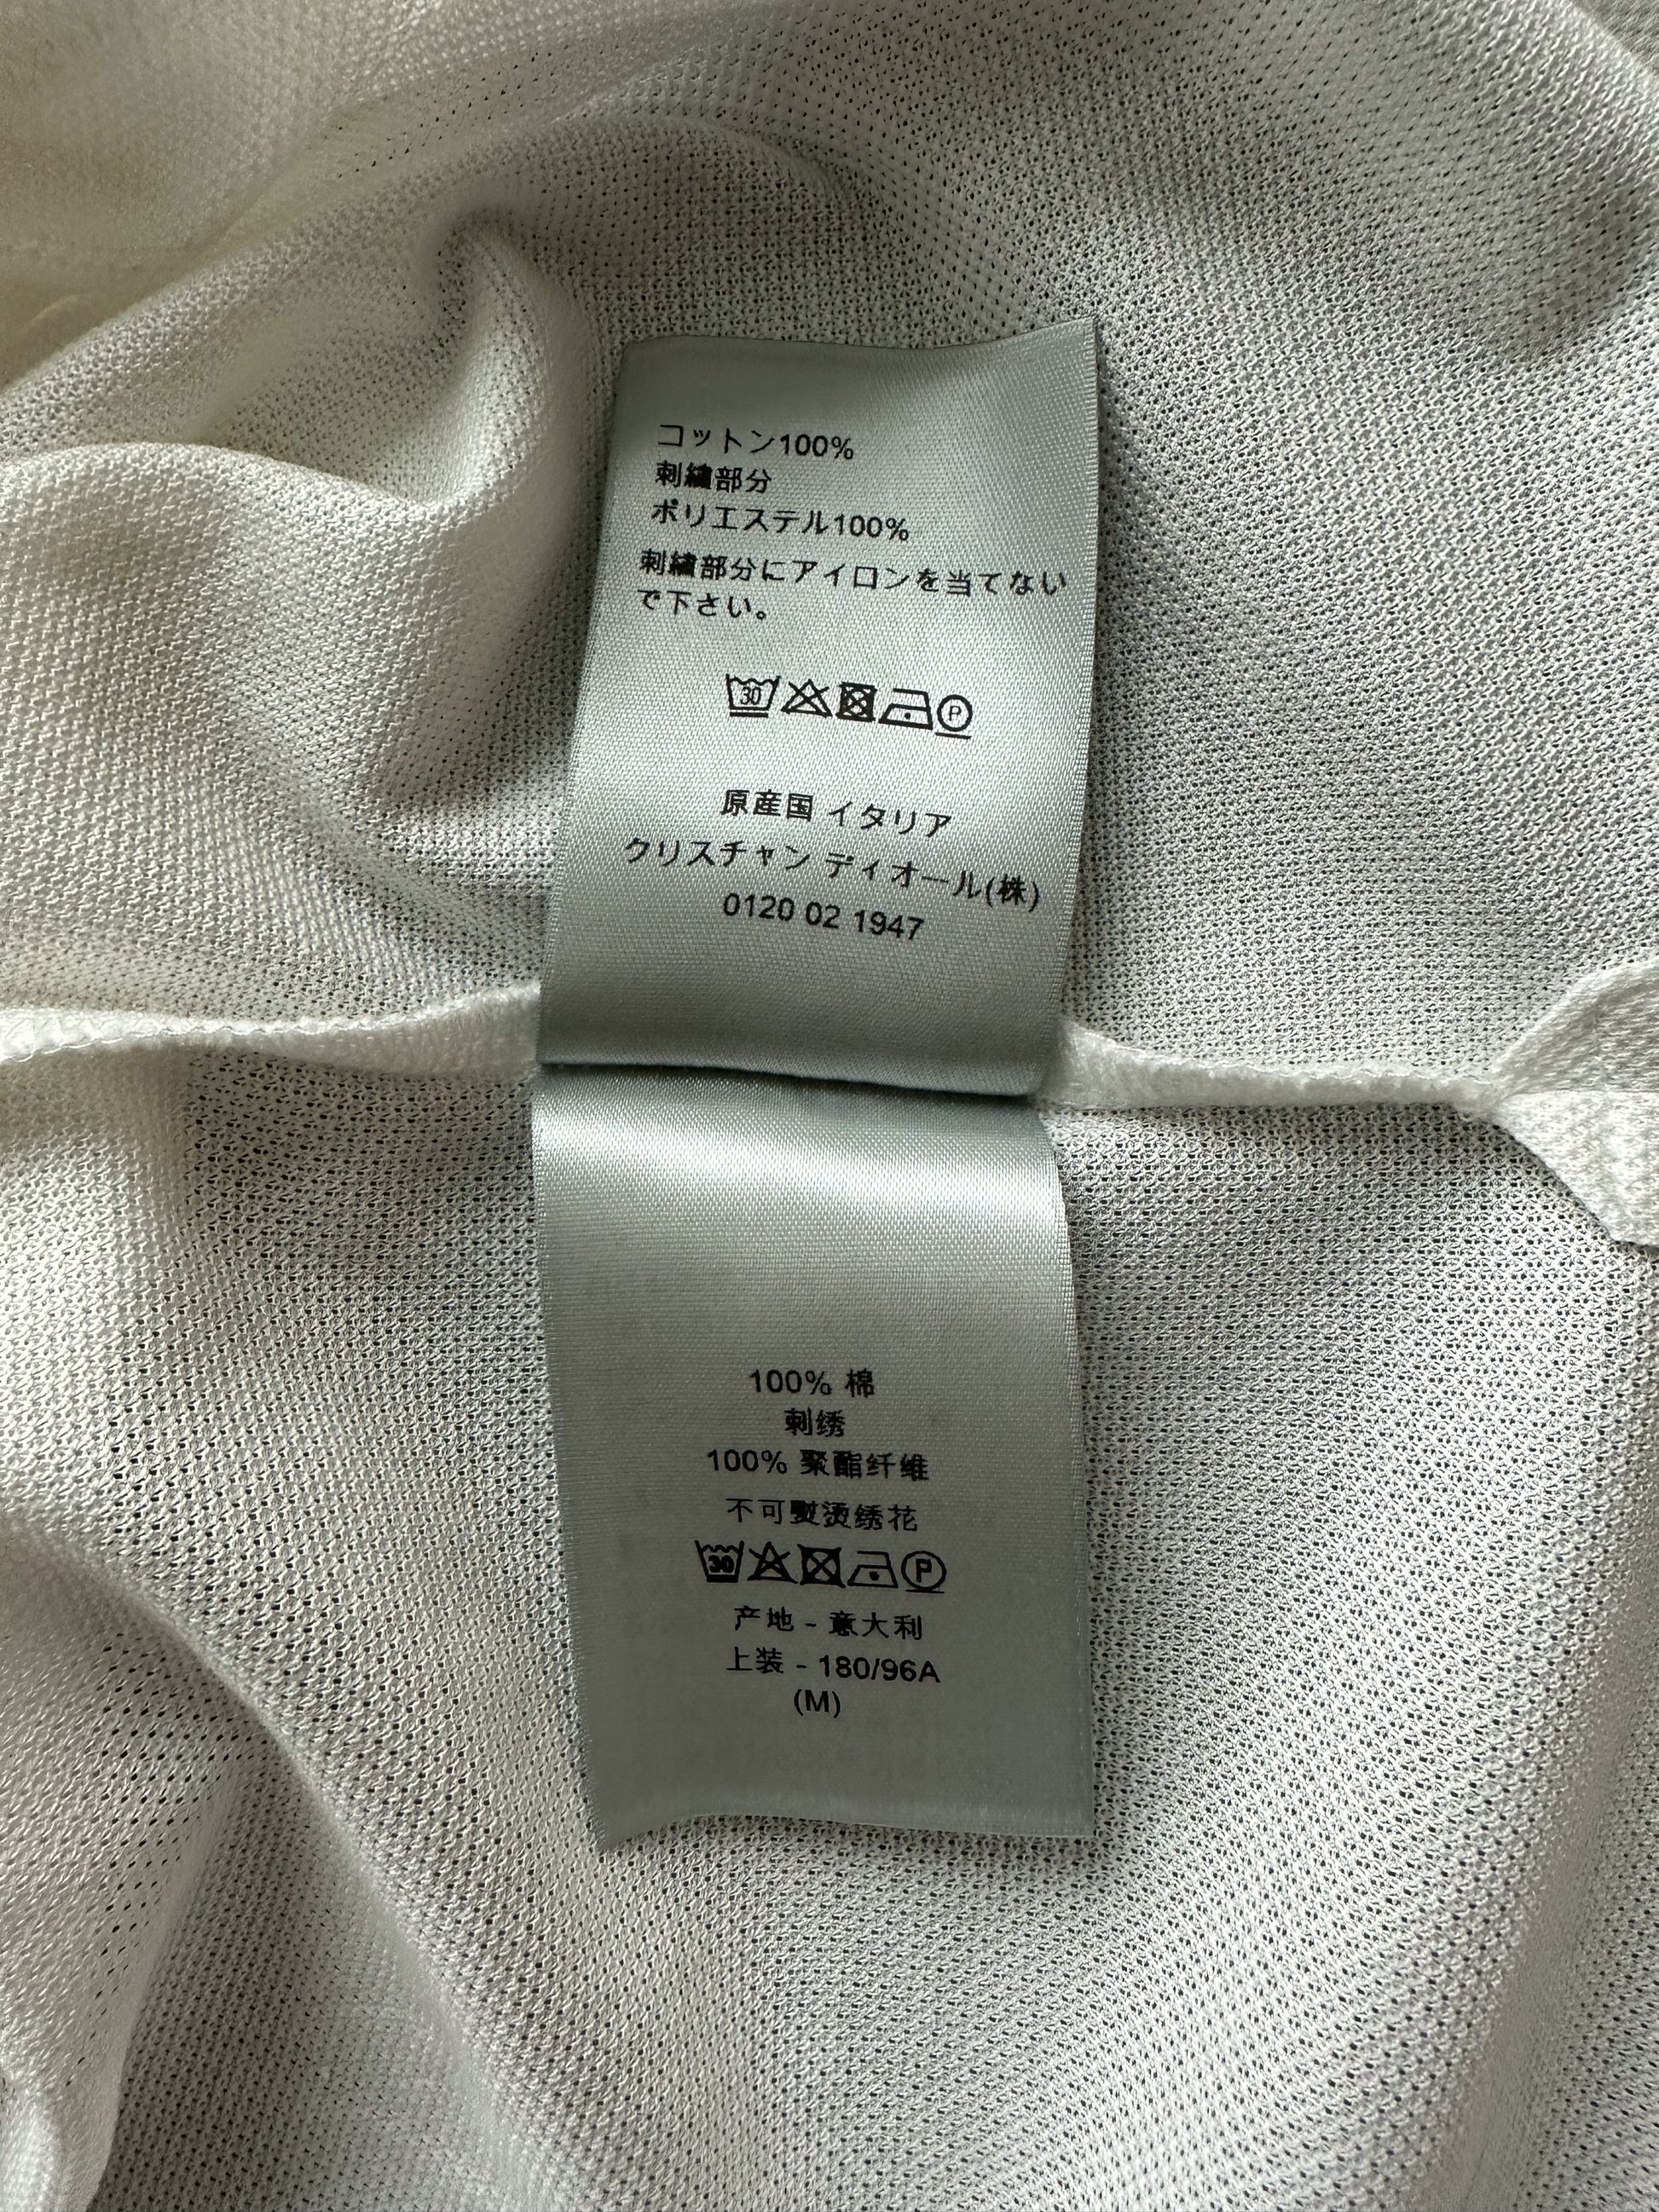 Louis Vuitton Shirt, Louis Vuitton T Shirt, Louis Jordan